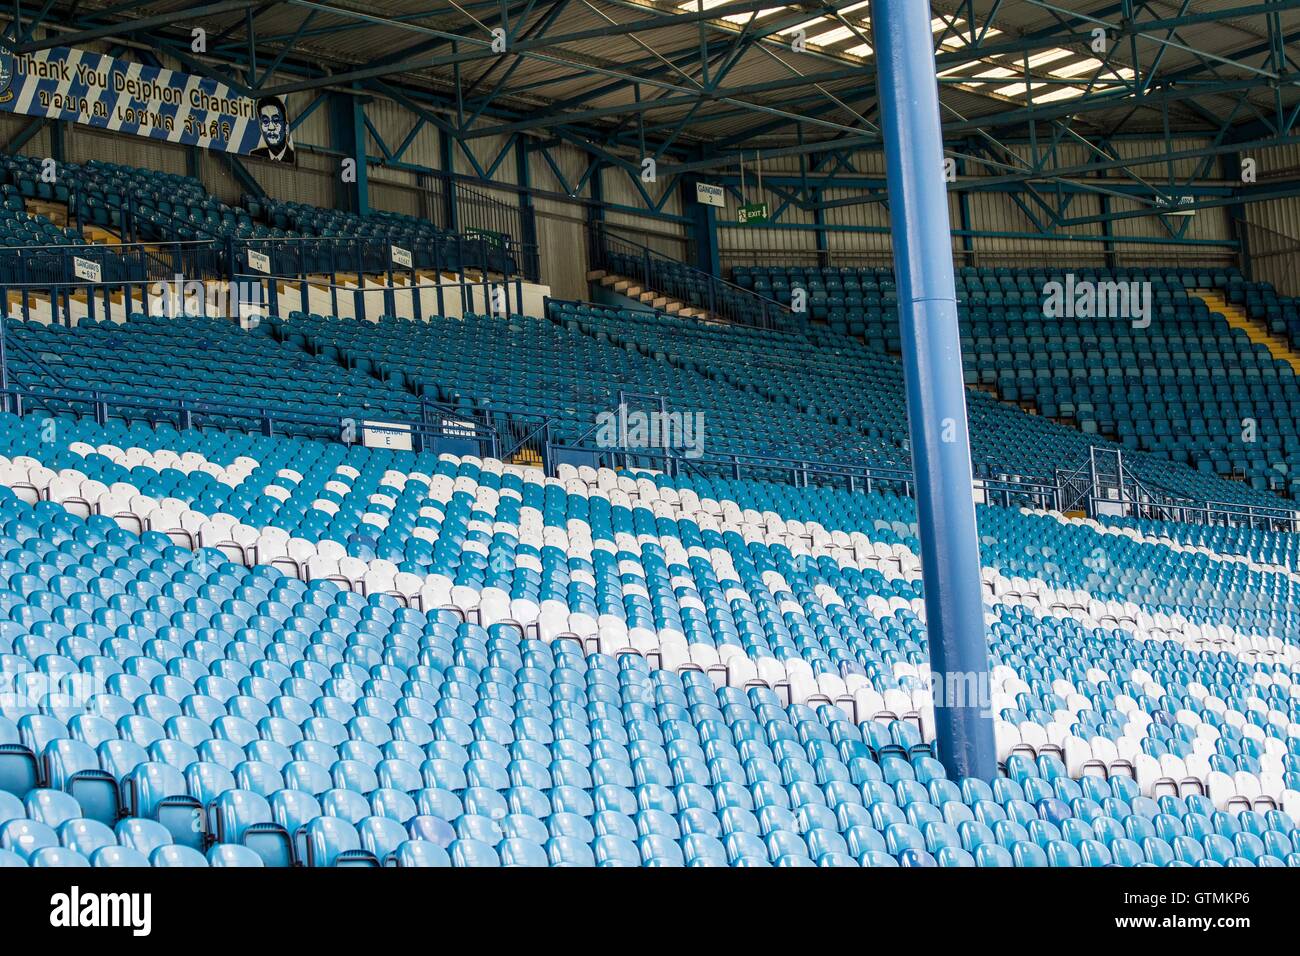 Sheffield Wednesday's Hillsborough Stadium Stock Photo